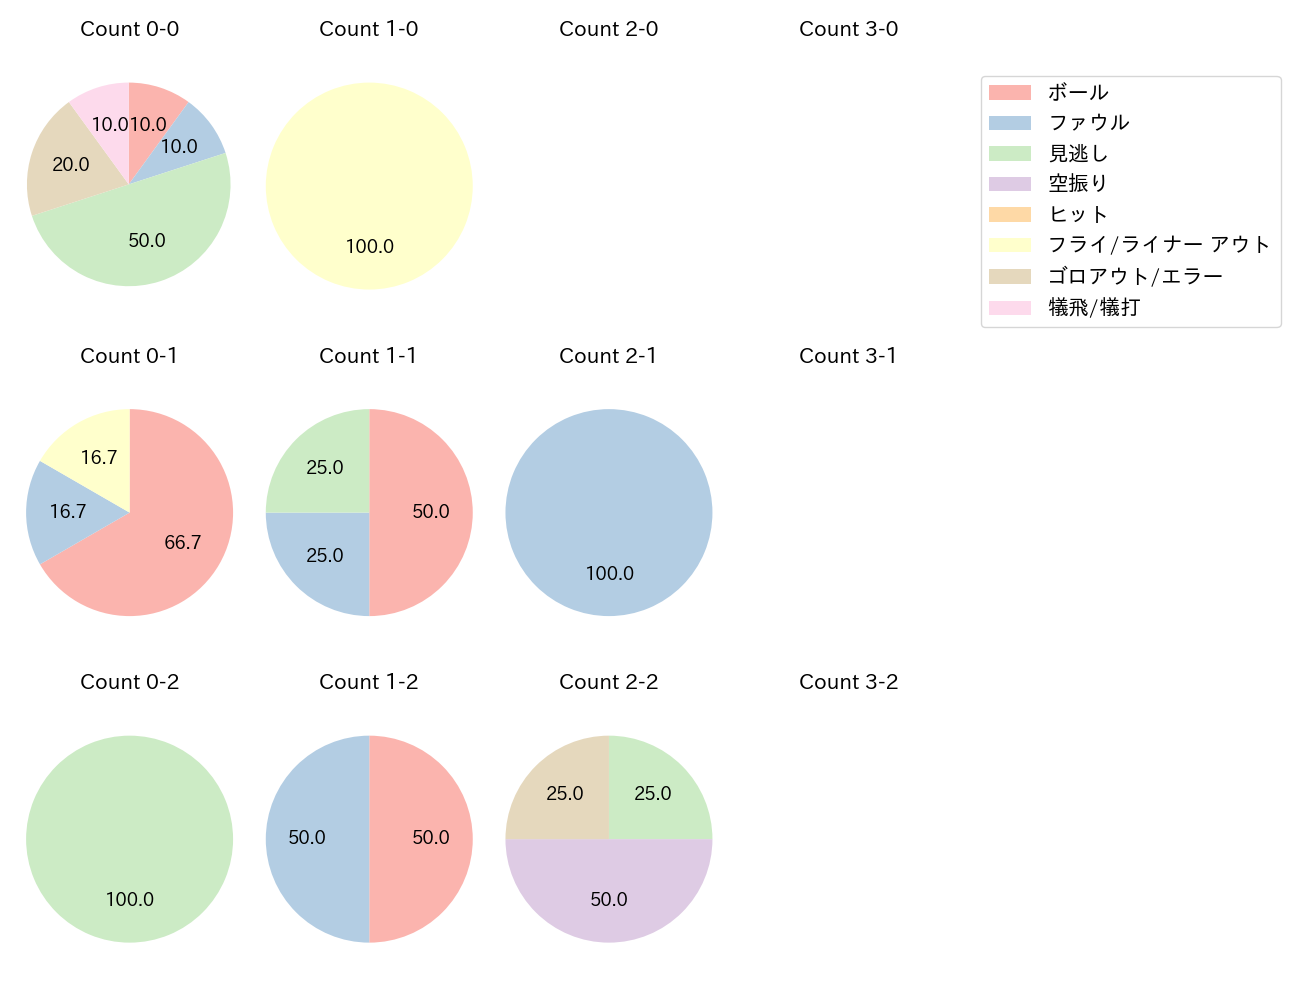 佐藤 龍世の球数分布(2022年9月)